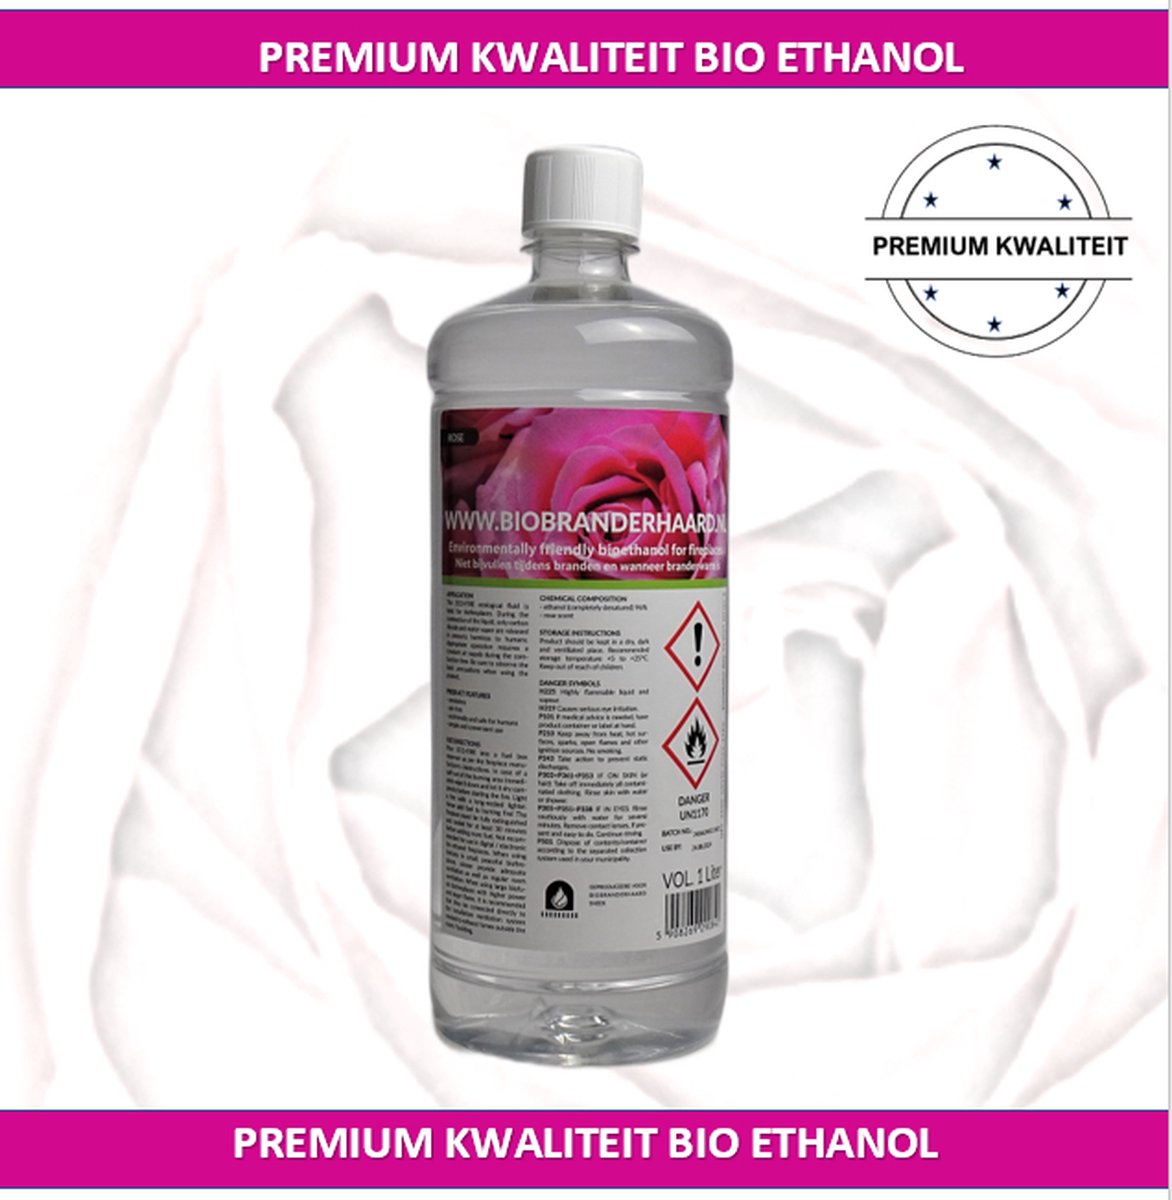 biobranderhaard | fles bio ethanol met zachte rozengeur| Premium bio - ethanol | 1 liter | premium kwaliteit Bio ethanol| | bio ethanolhaard vulling | sfeerhaarden bio ethanol | sfeerhaardvulling